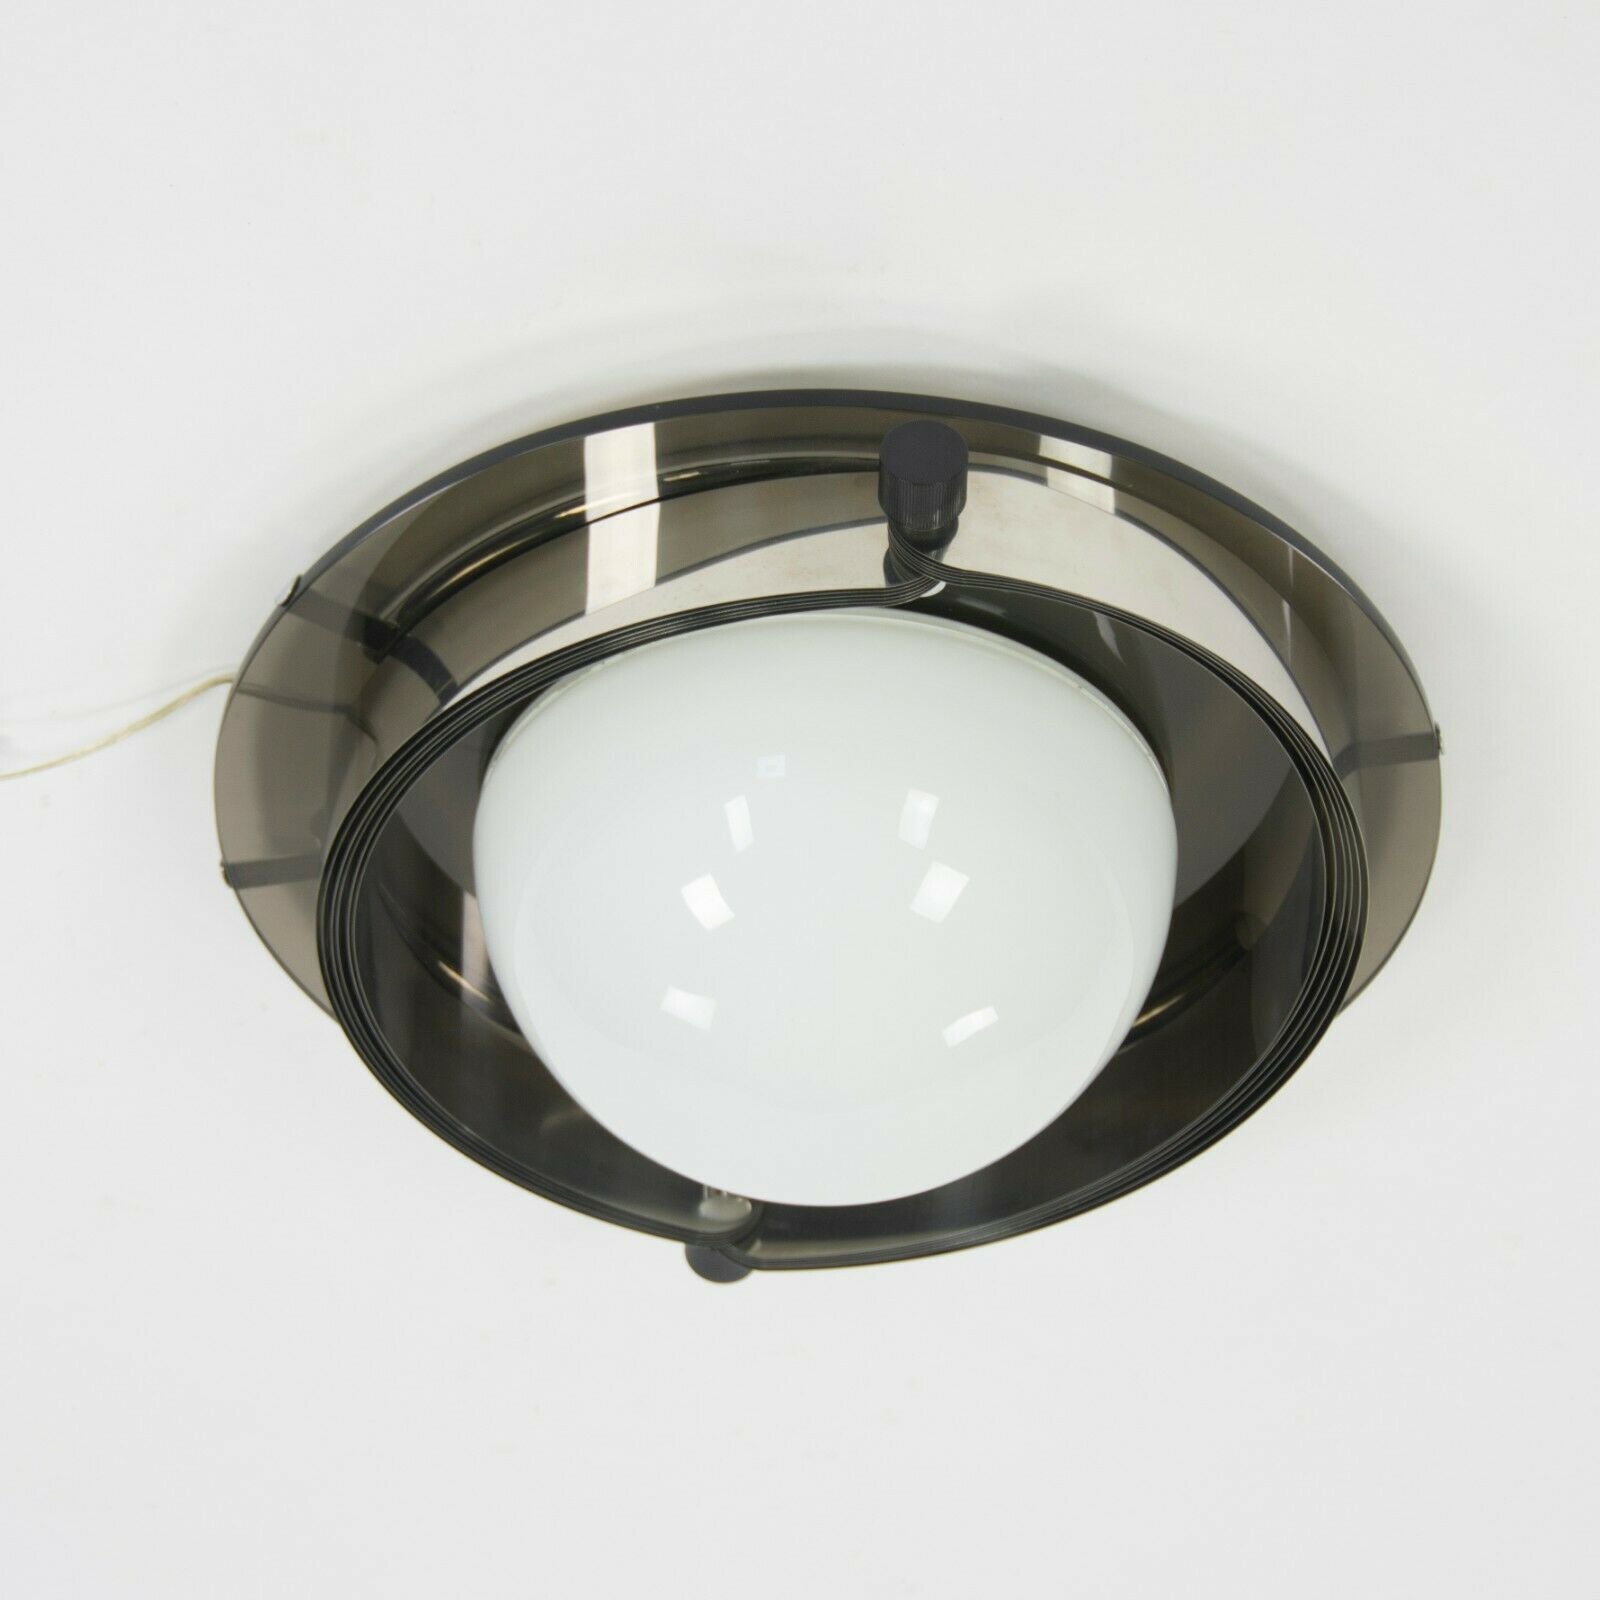 Vintage Bauhaus Flush Ceiling Pendant Lamp from Richard Meier Giovannitti House